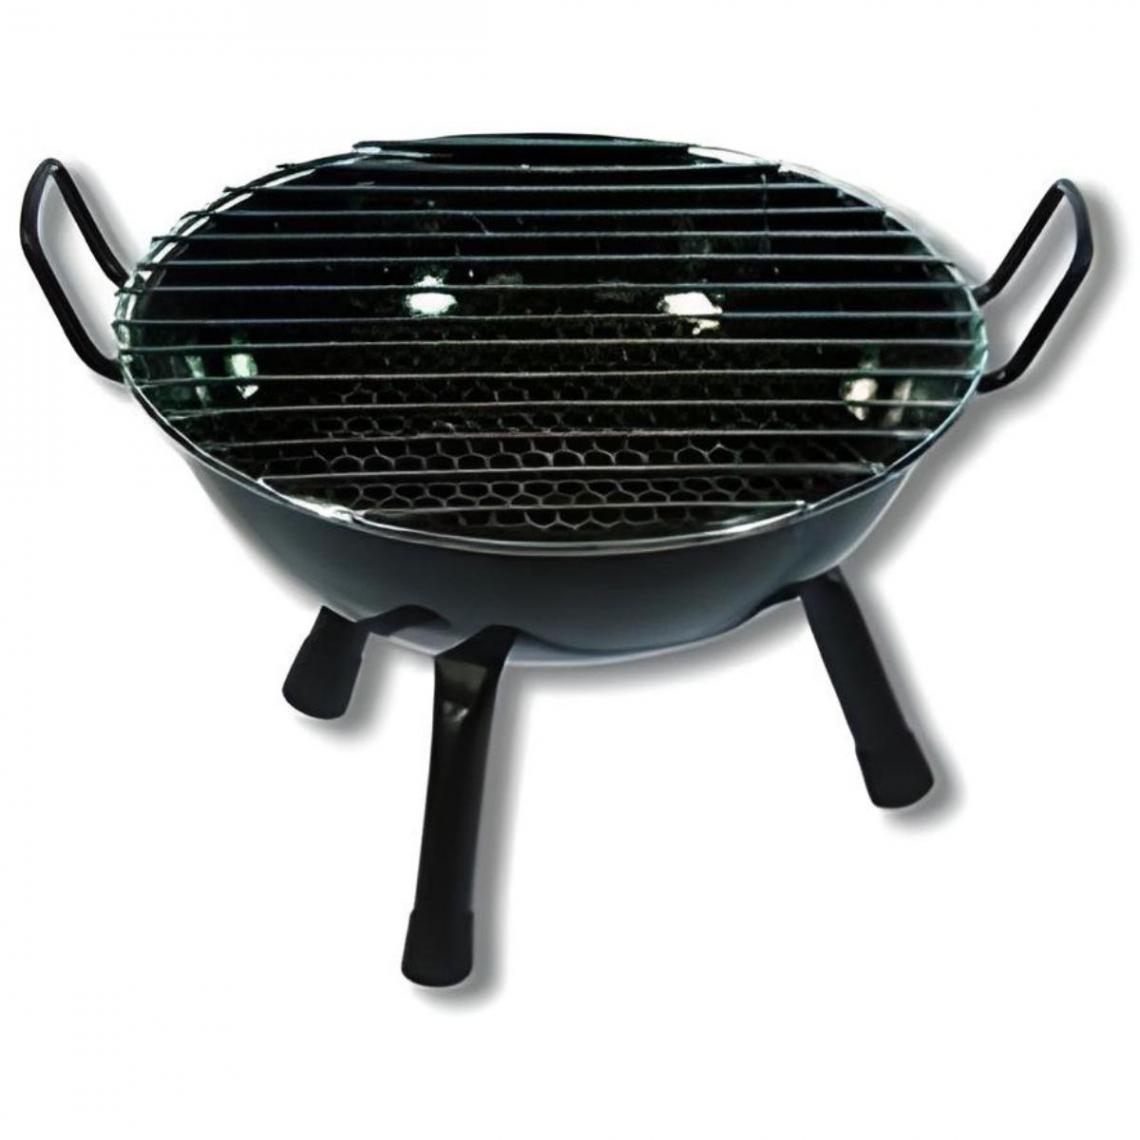 Visiodirect - Barbecue rond vitrifié pour table en Acier inoxydable coloris Noir - 36 x 20 cm - Barbecues charbon de bois